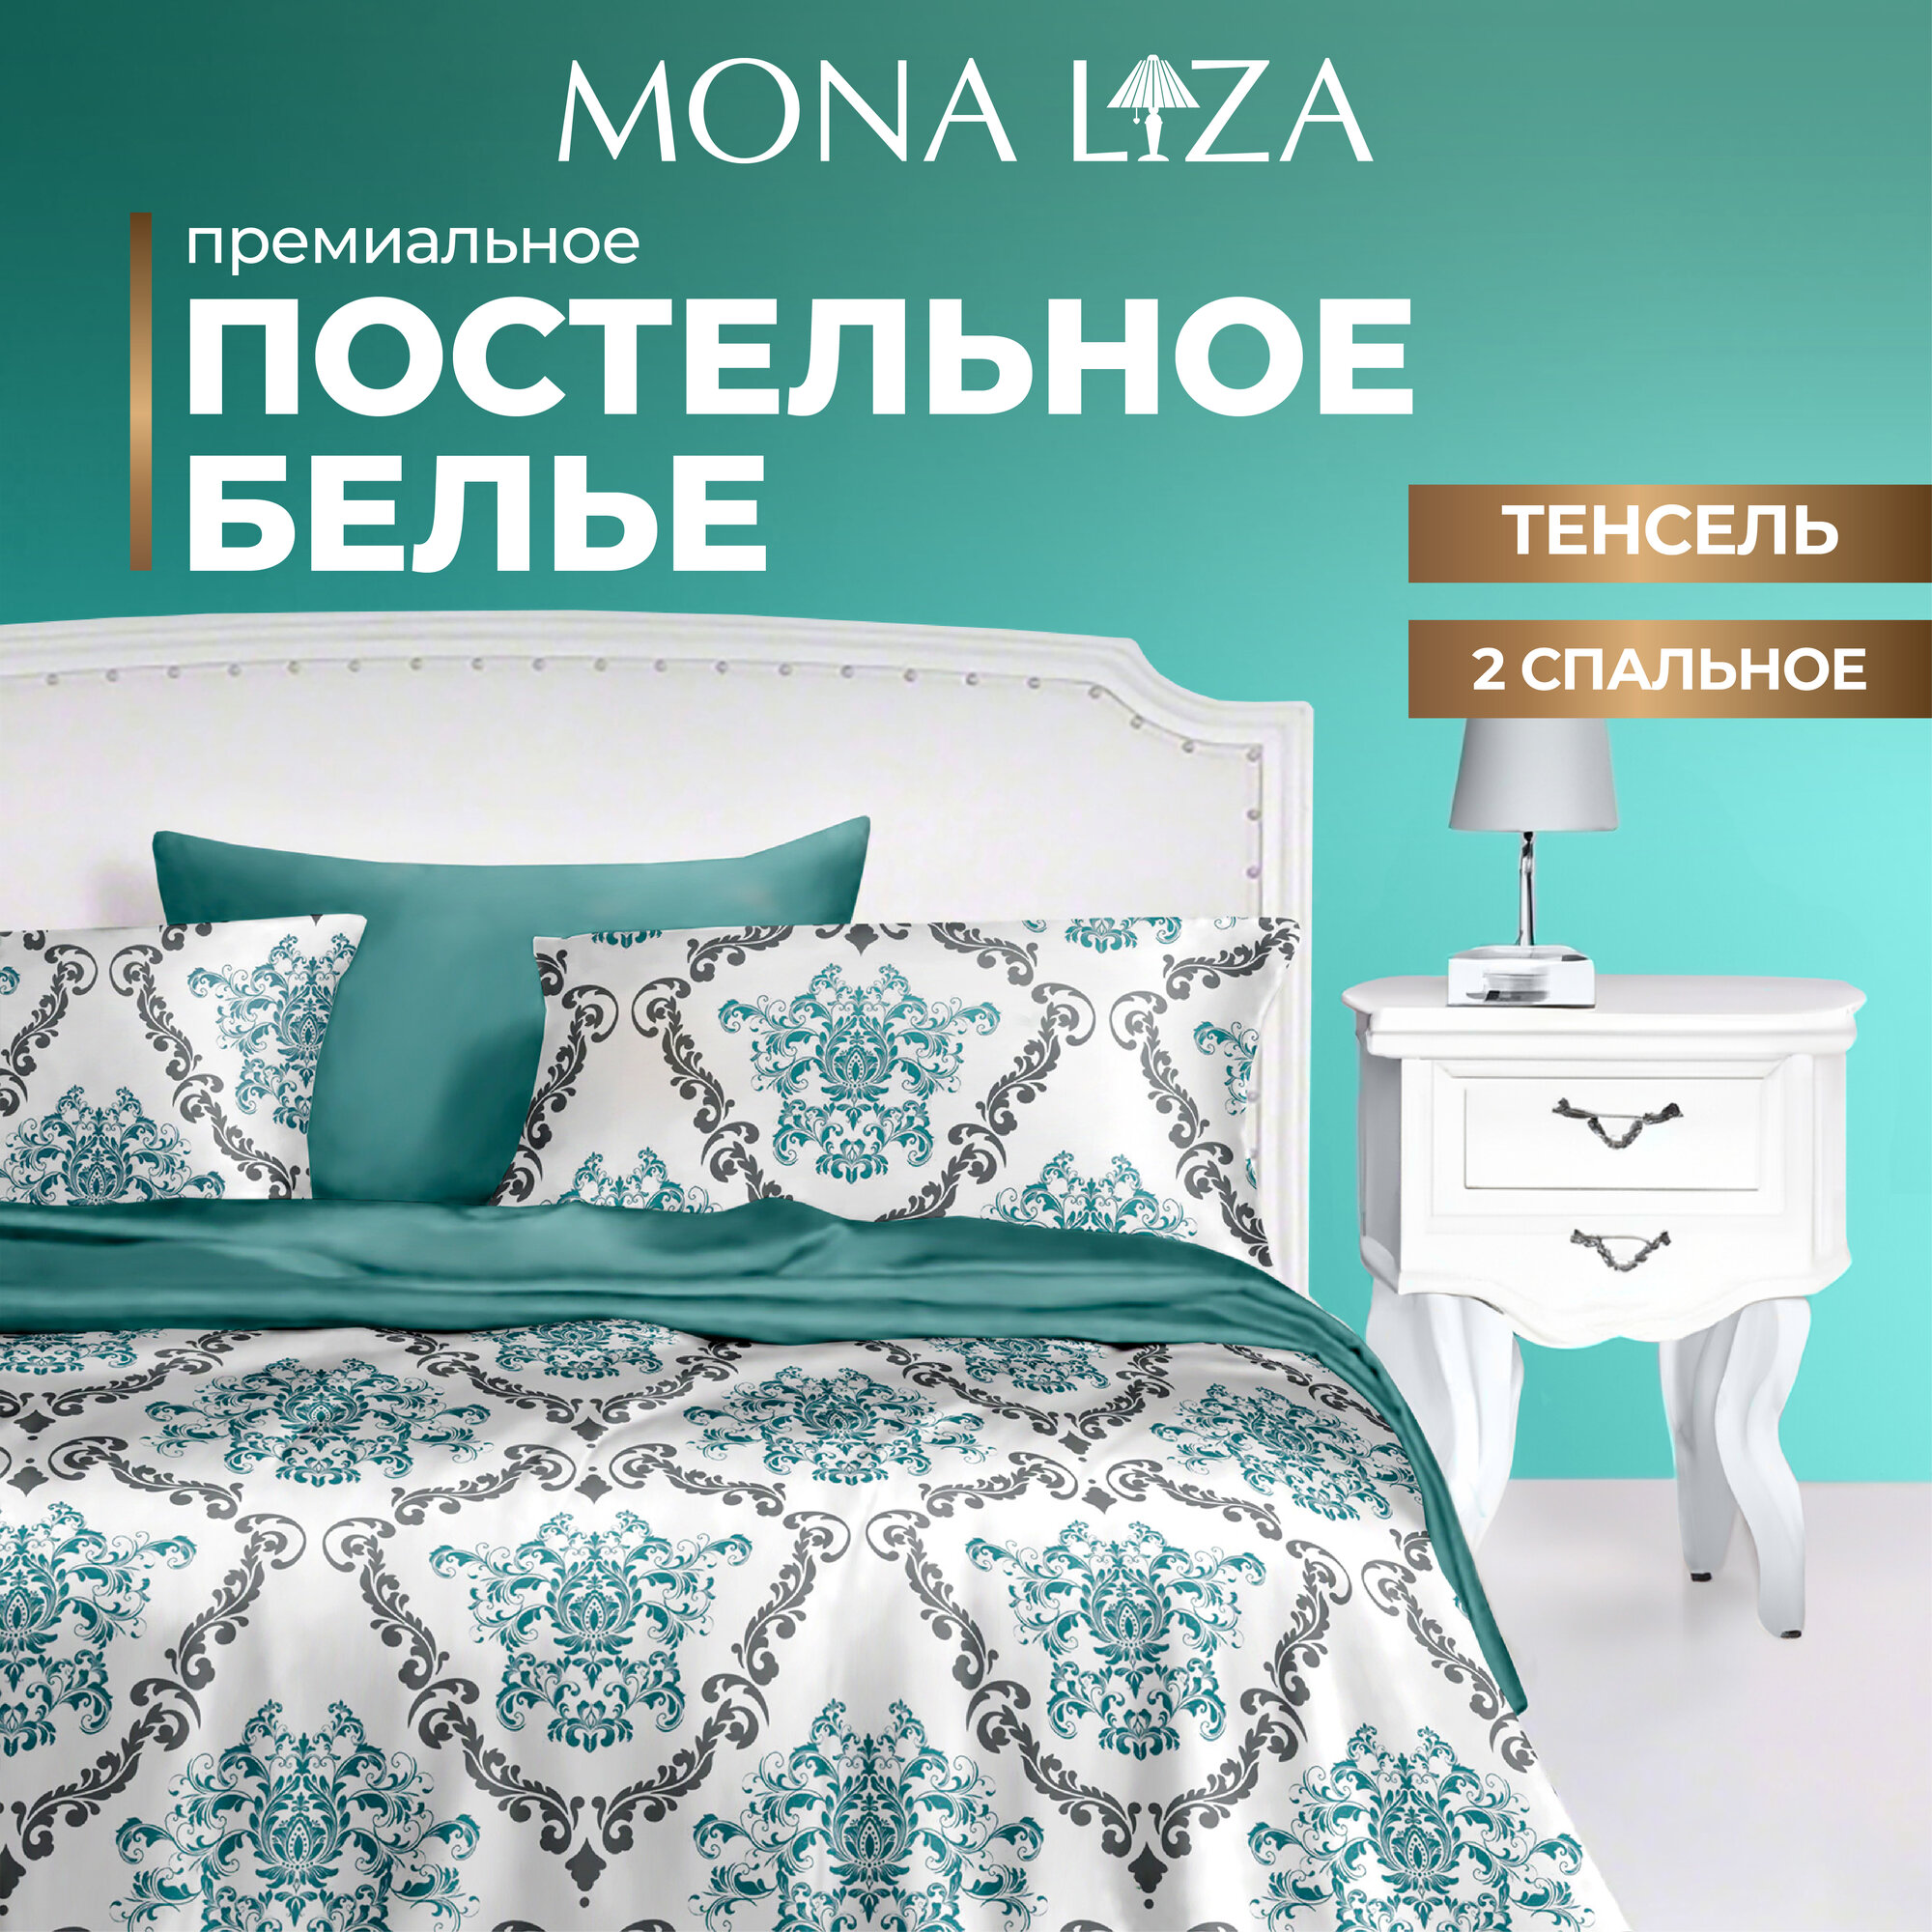 Комплект постельного белья 2сп Mona Liza Premium Kate, тенсел, 2сп, н(2) 50*70, н(2) 70*70